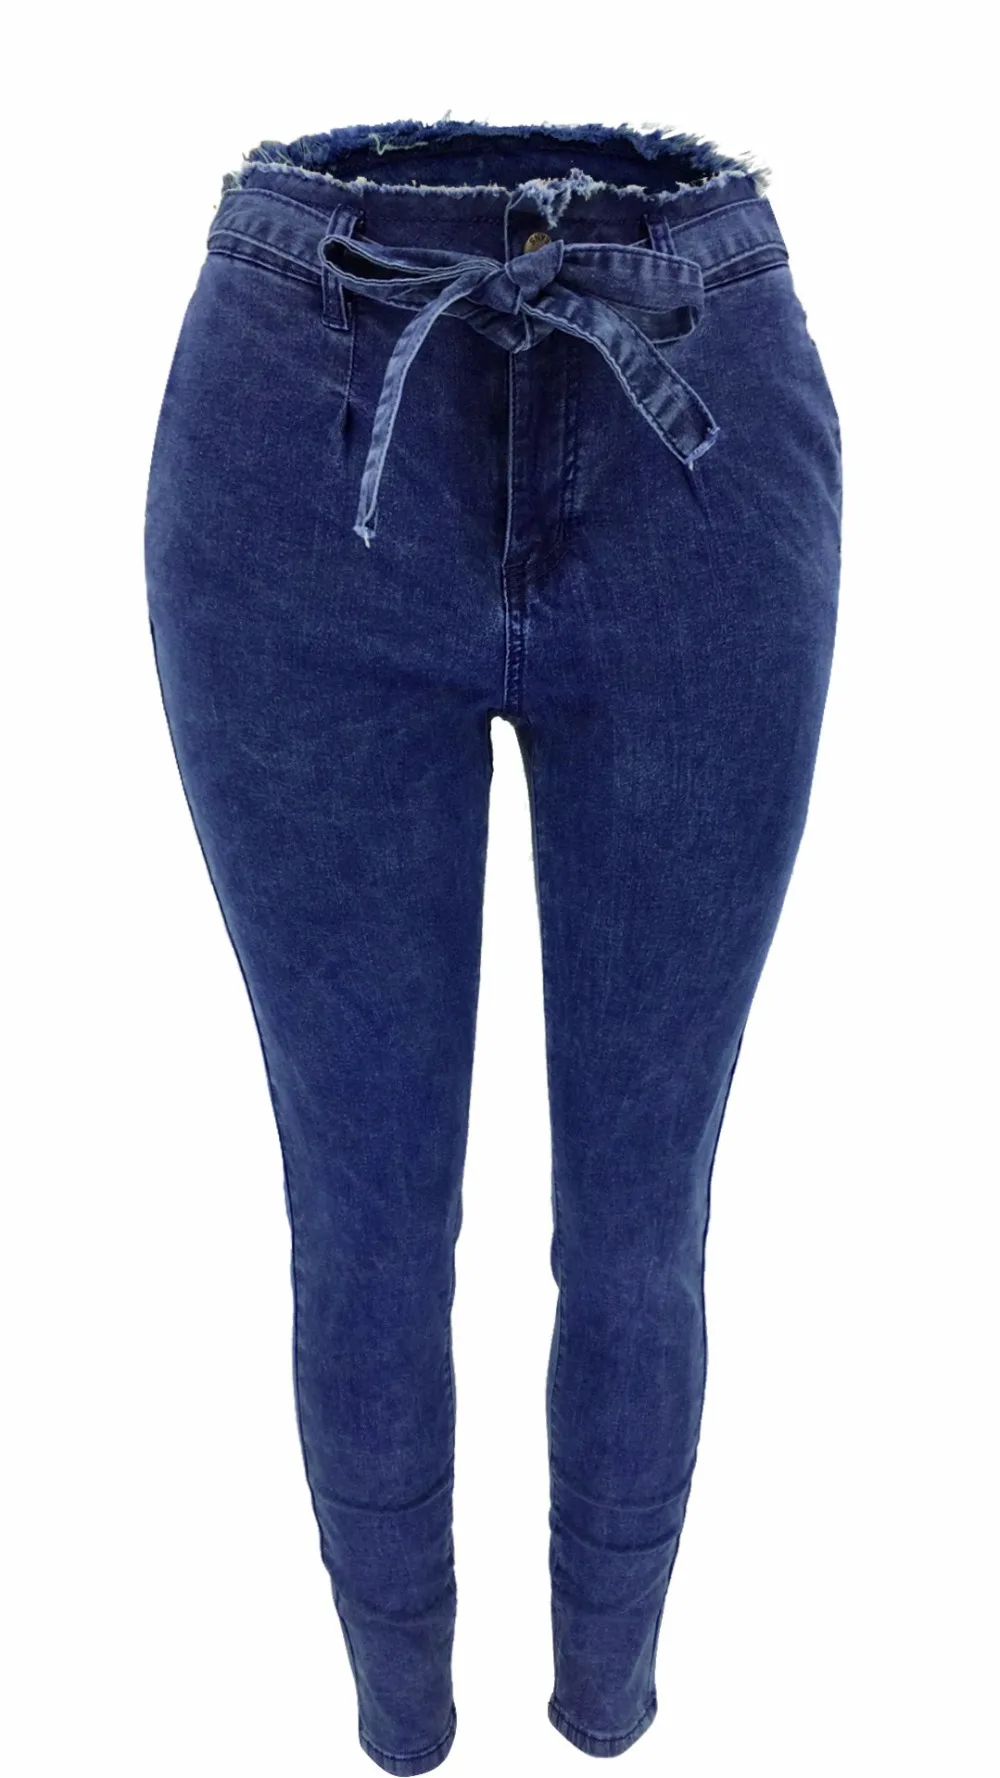 TCJULY, дизайн, уличная, узкие джинсы с эффектом пуш-ап, женский пояс, потертые джинсы-карандаш с кисточками, черные, синие, повседневные джинсы для мам